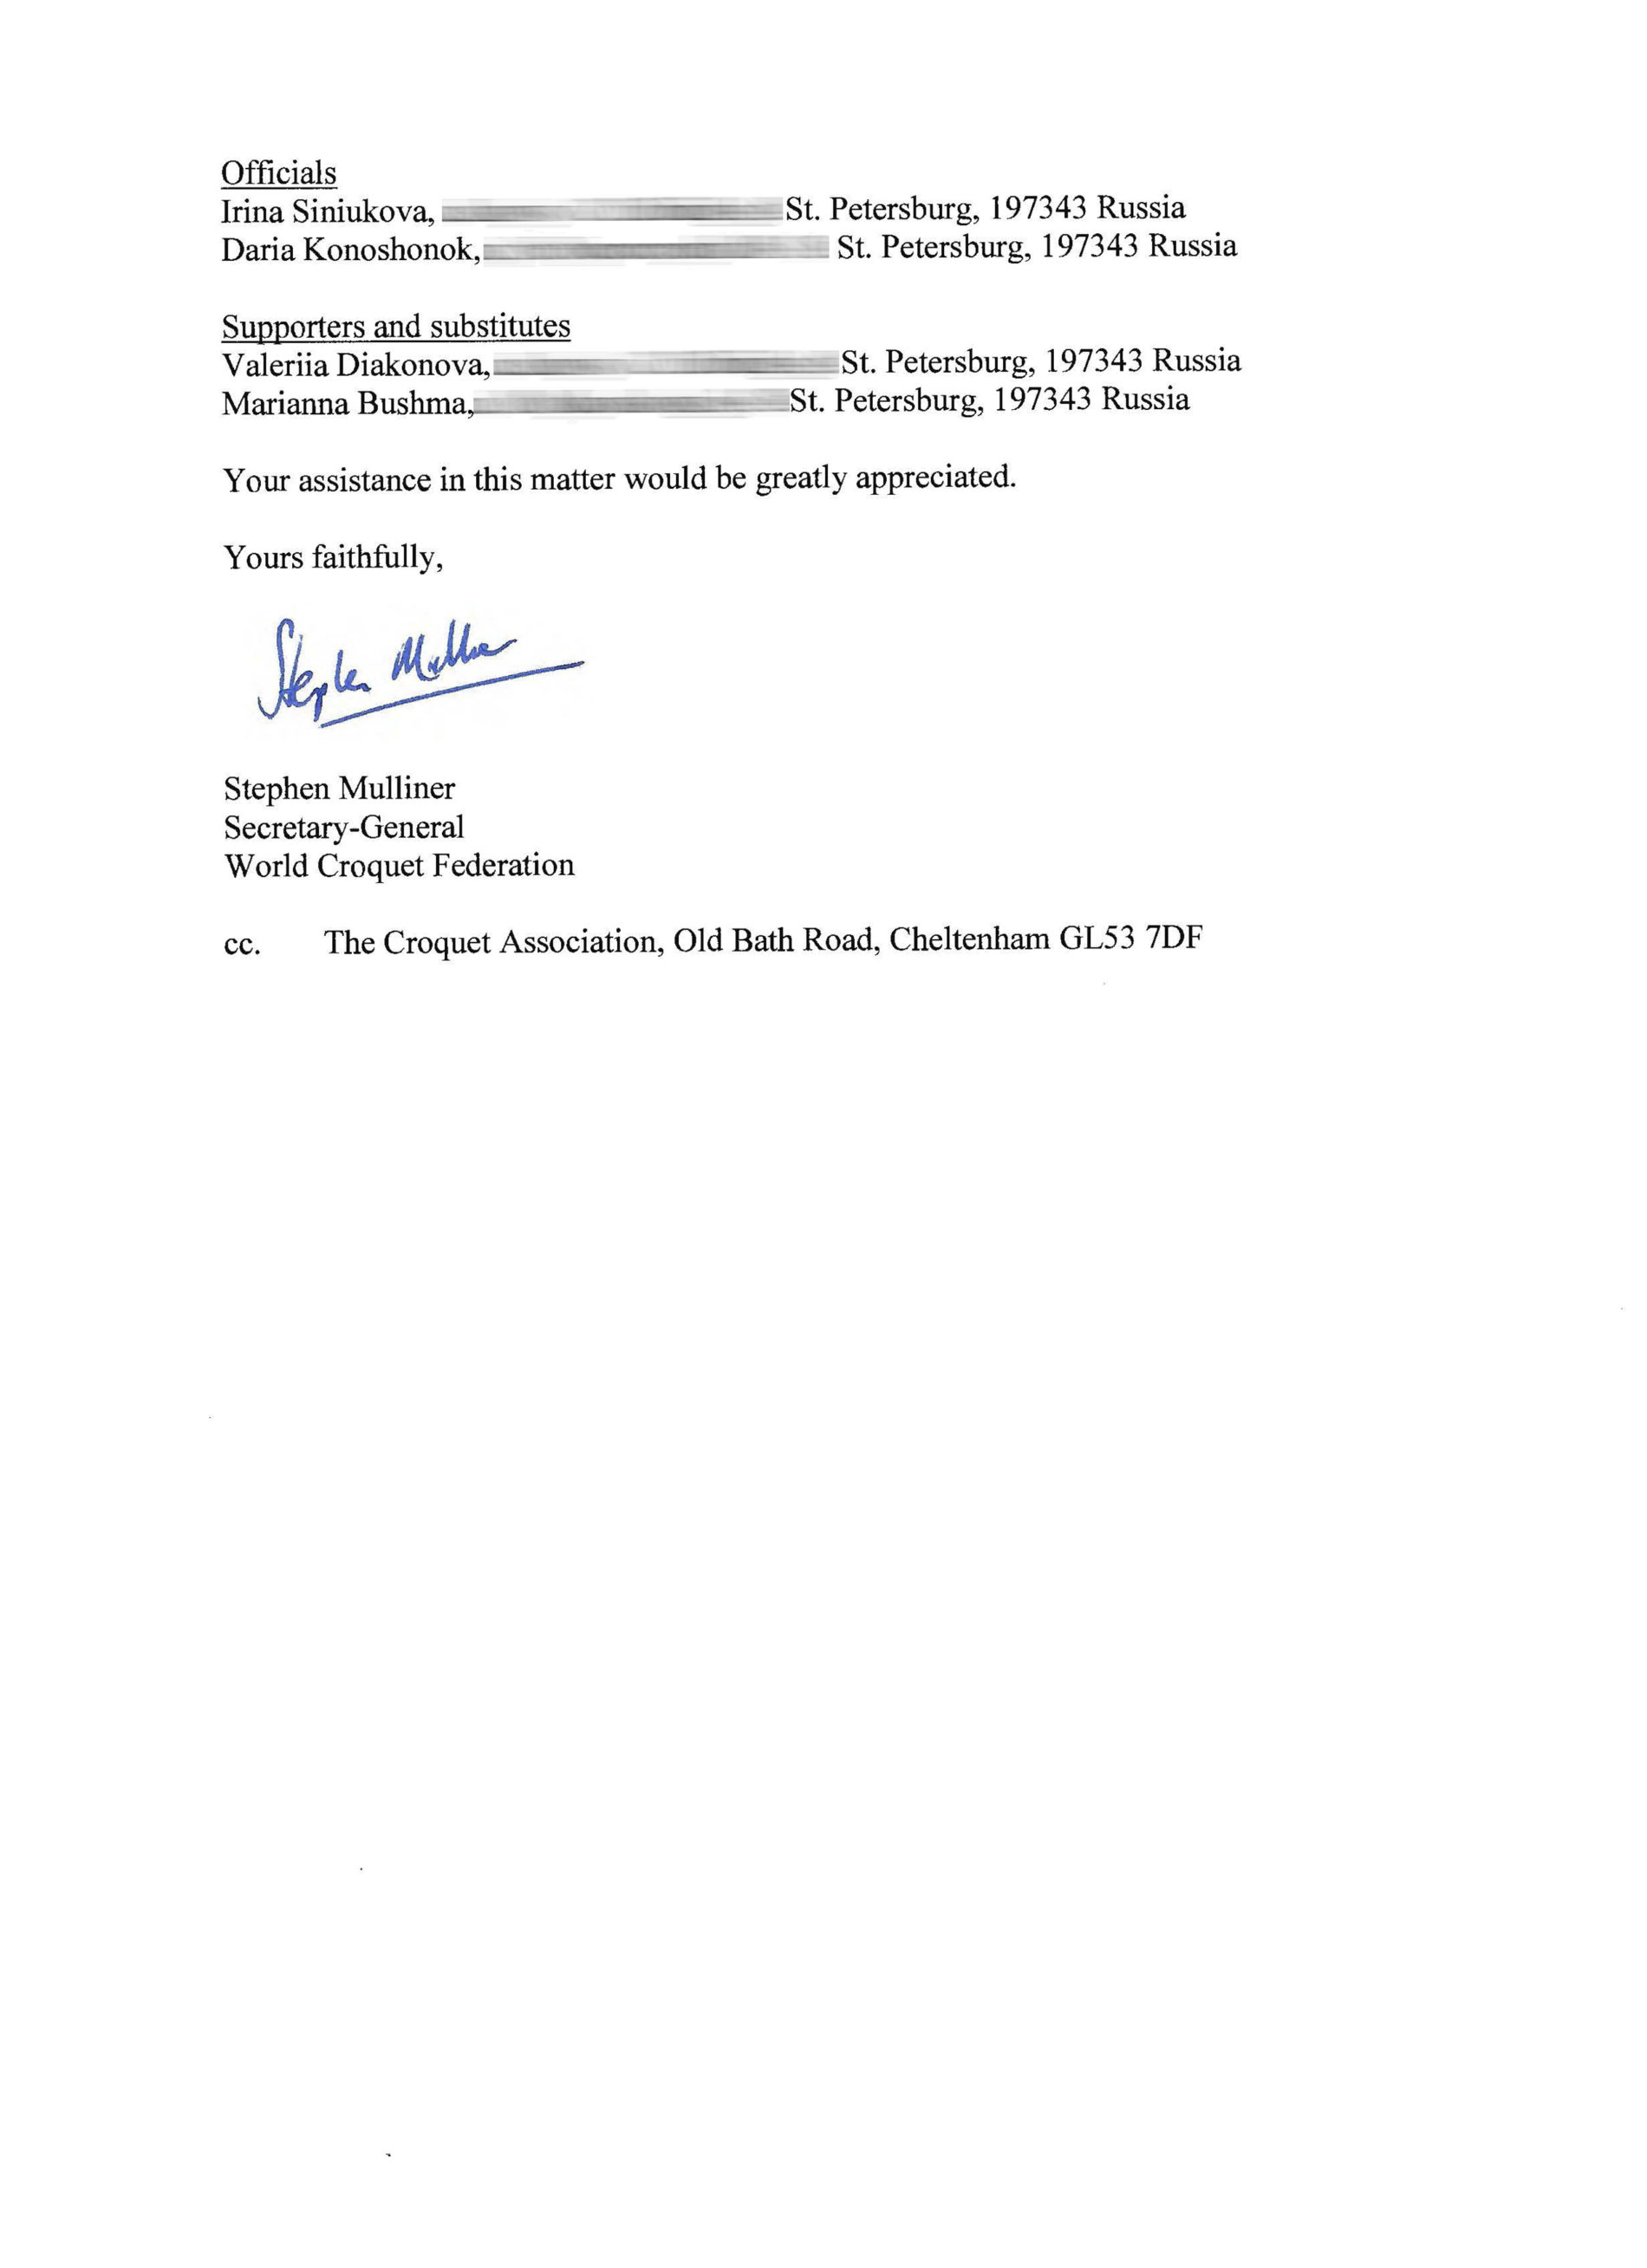 письмо от Всемирной Федерации Крокета (WCF) в Британское консульство в Москве.